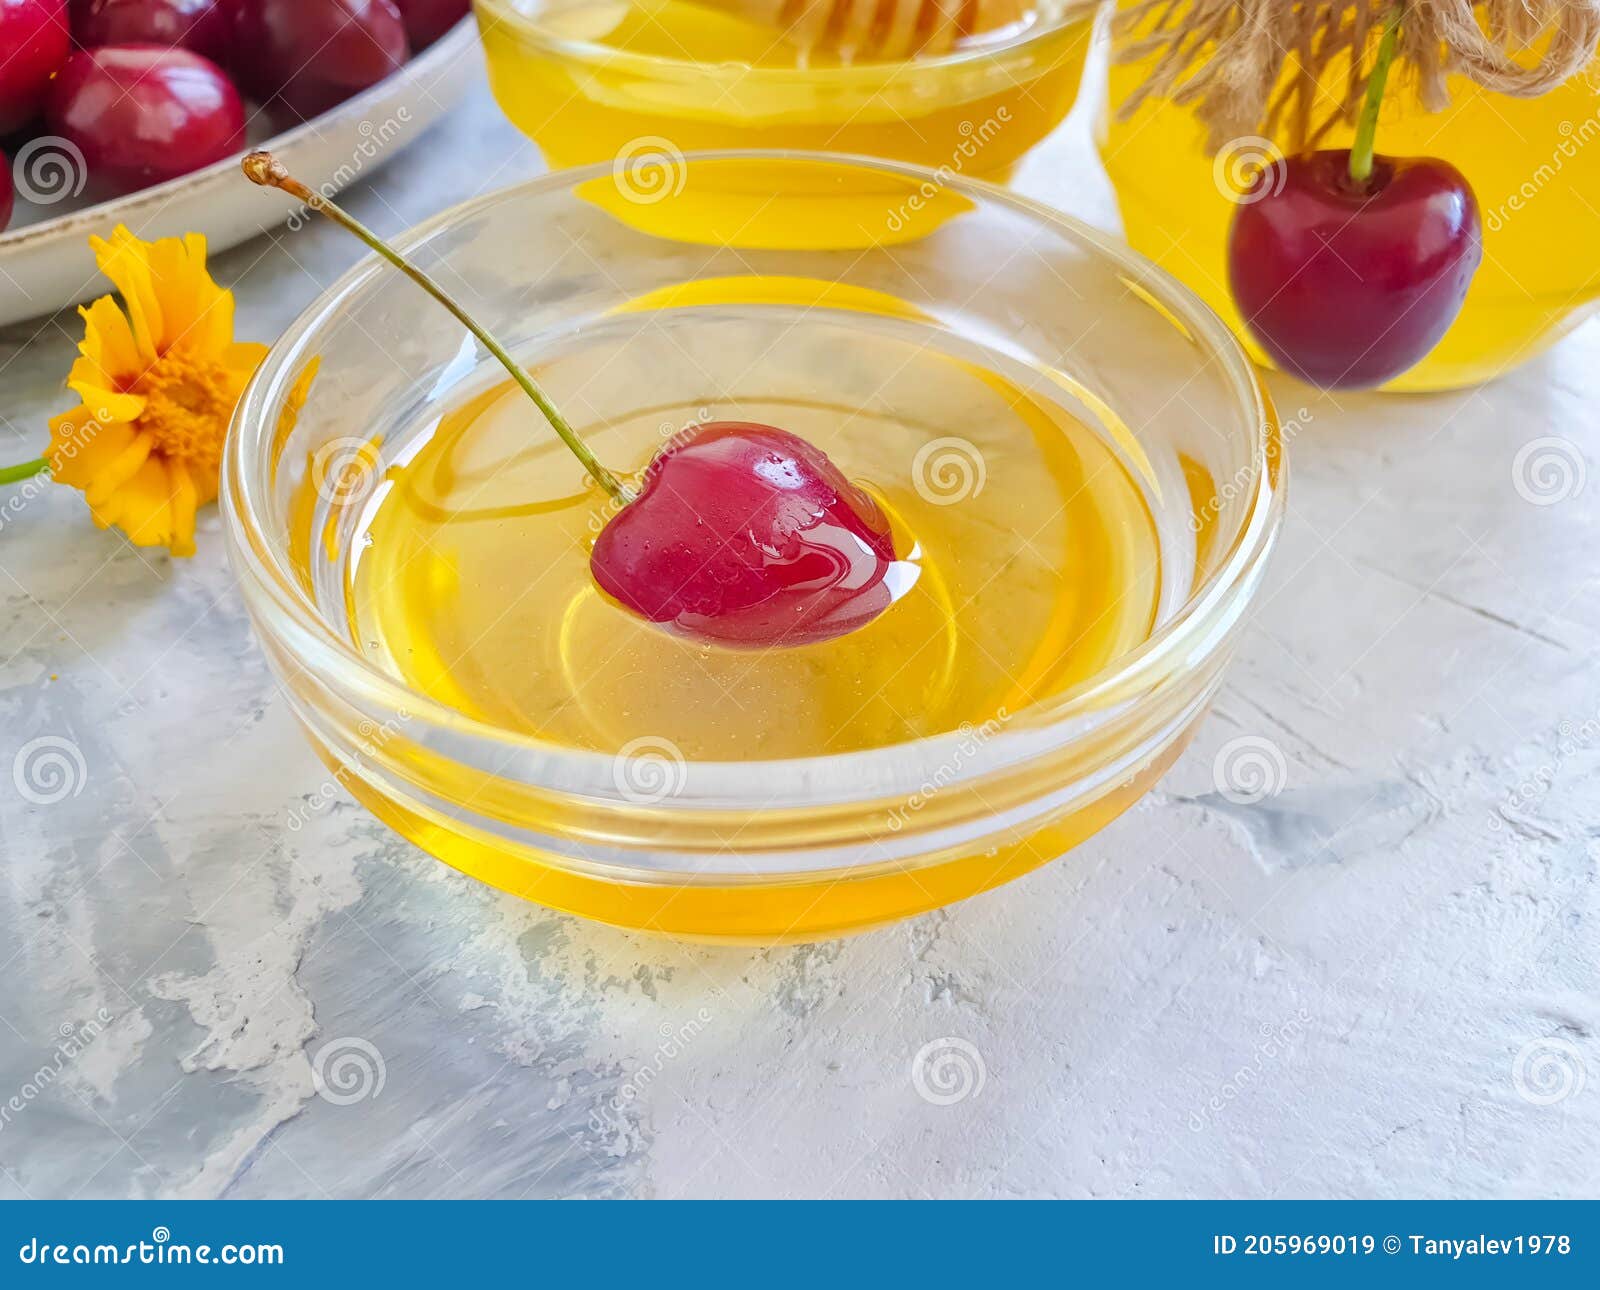 fresh honey, cherry   healthy eating   blossom  on concrete backgroundn liquid, dessert